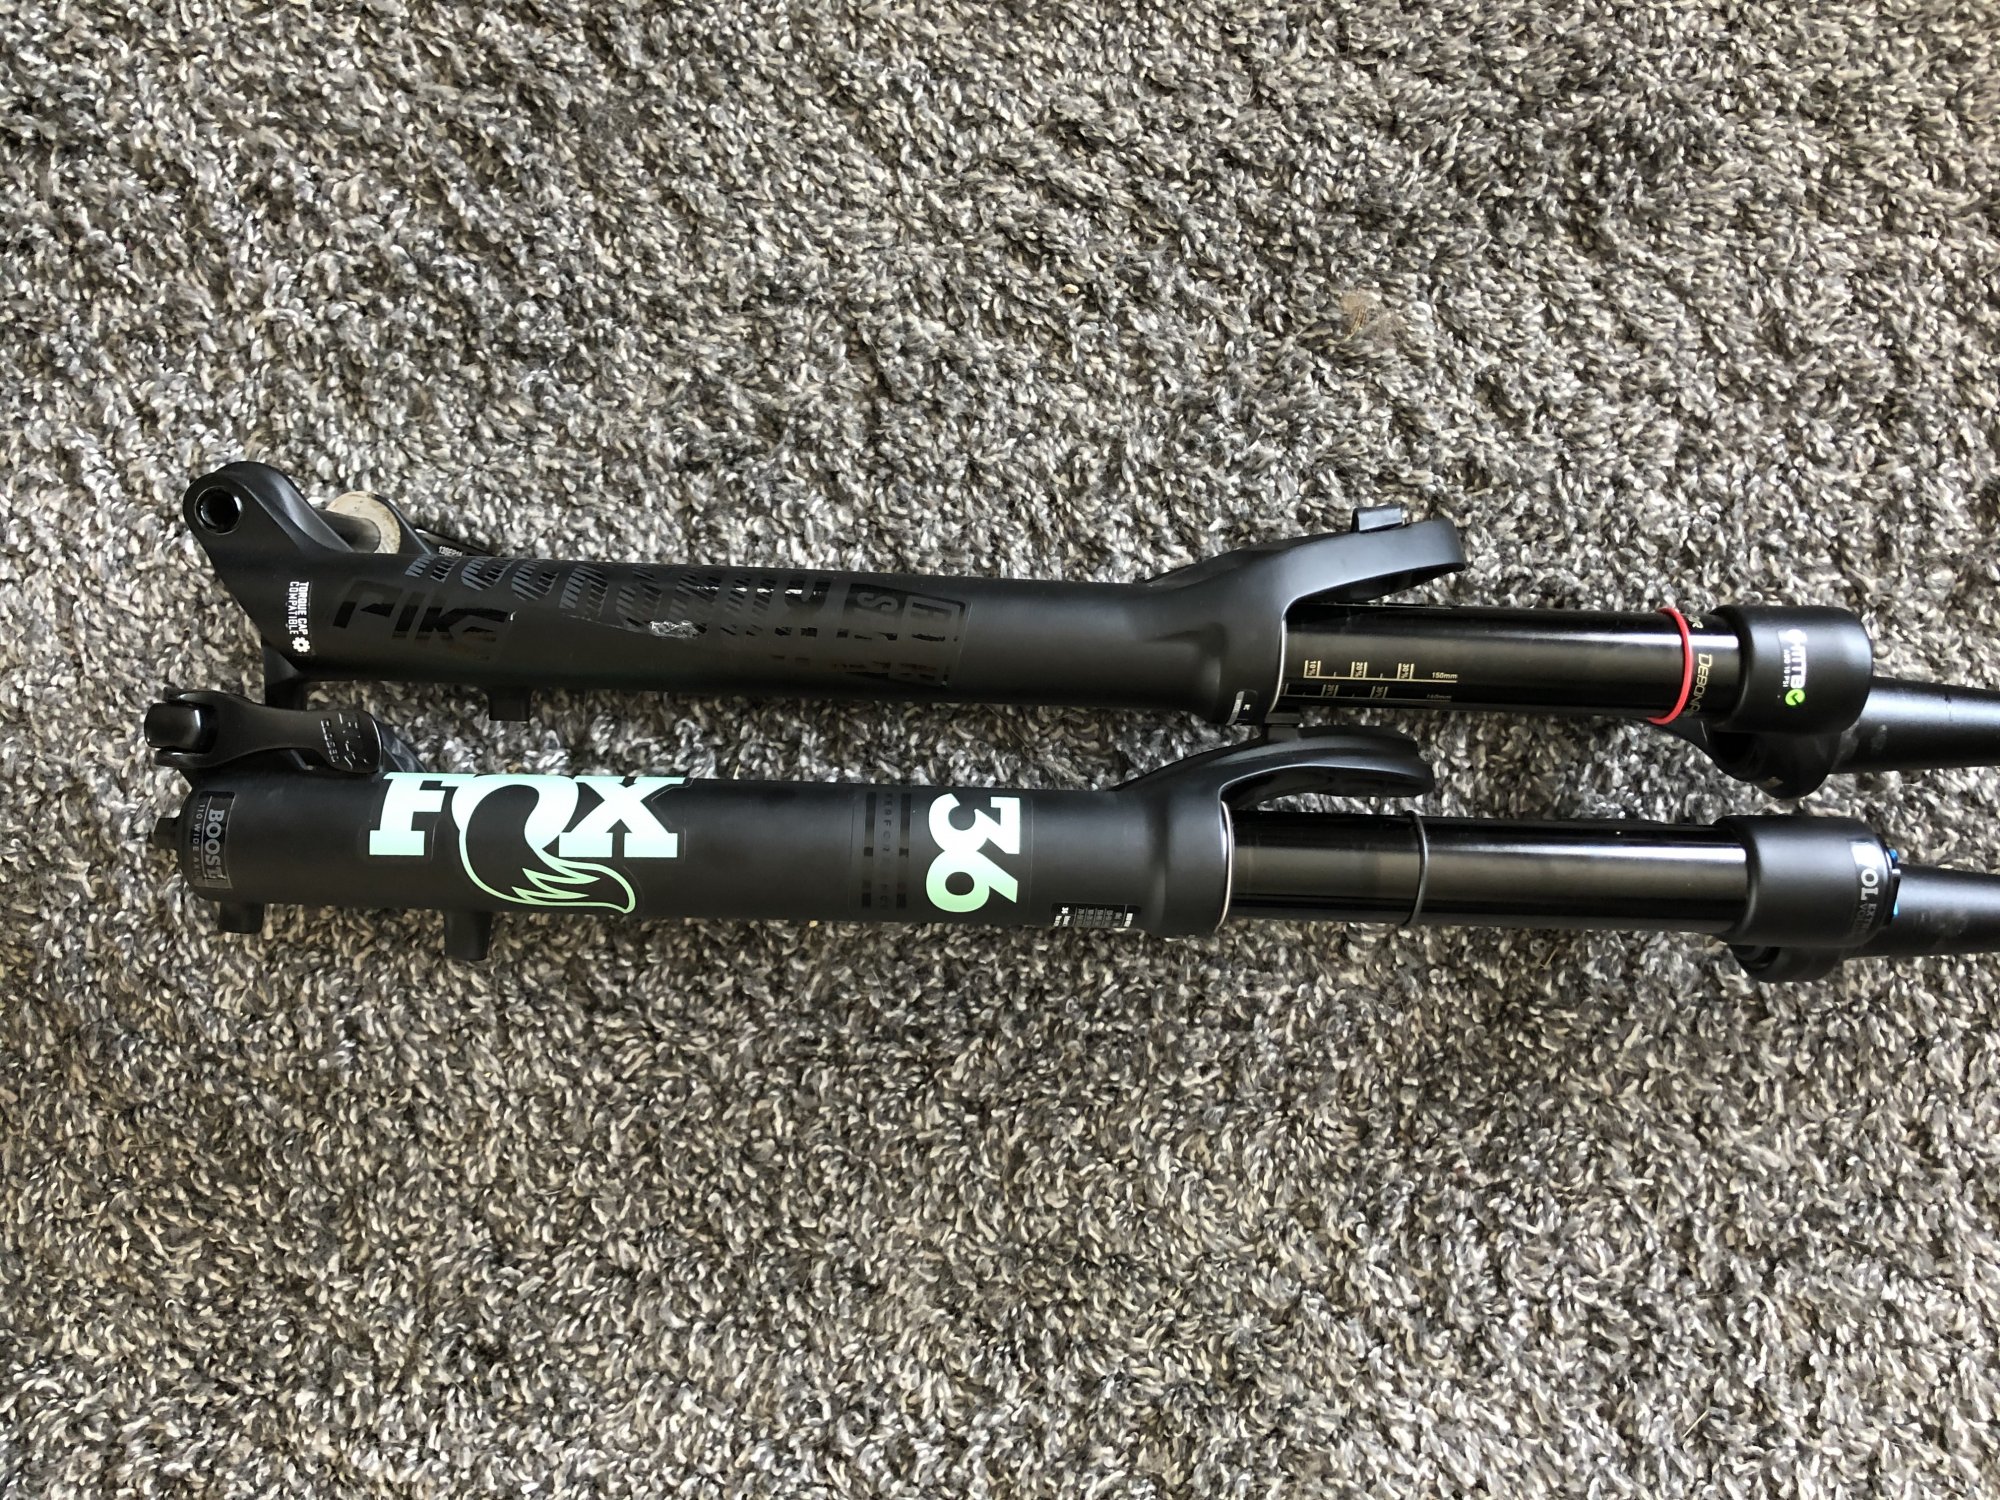 Fox 36 160mm 44 offset vs Rock Shox Pike 150mm 52 offset